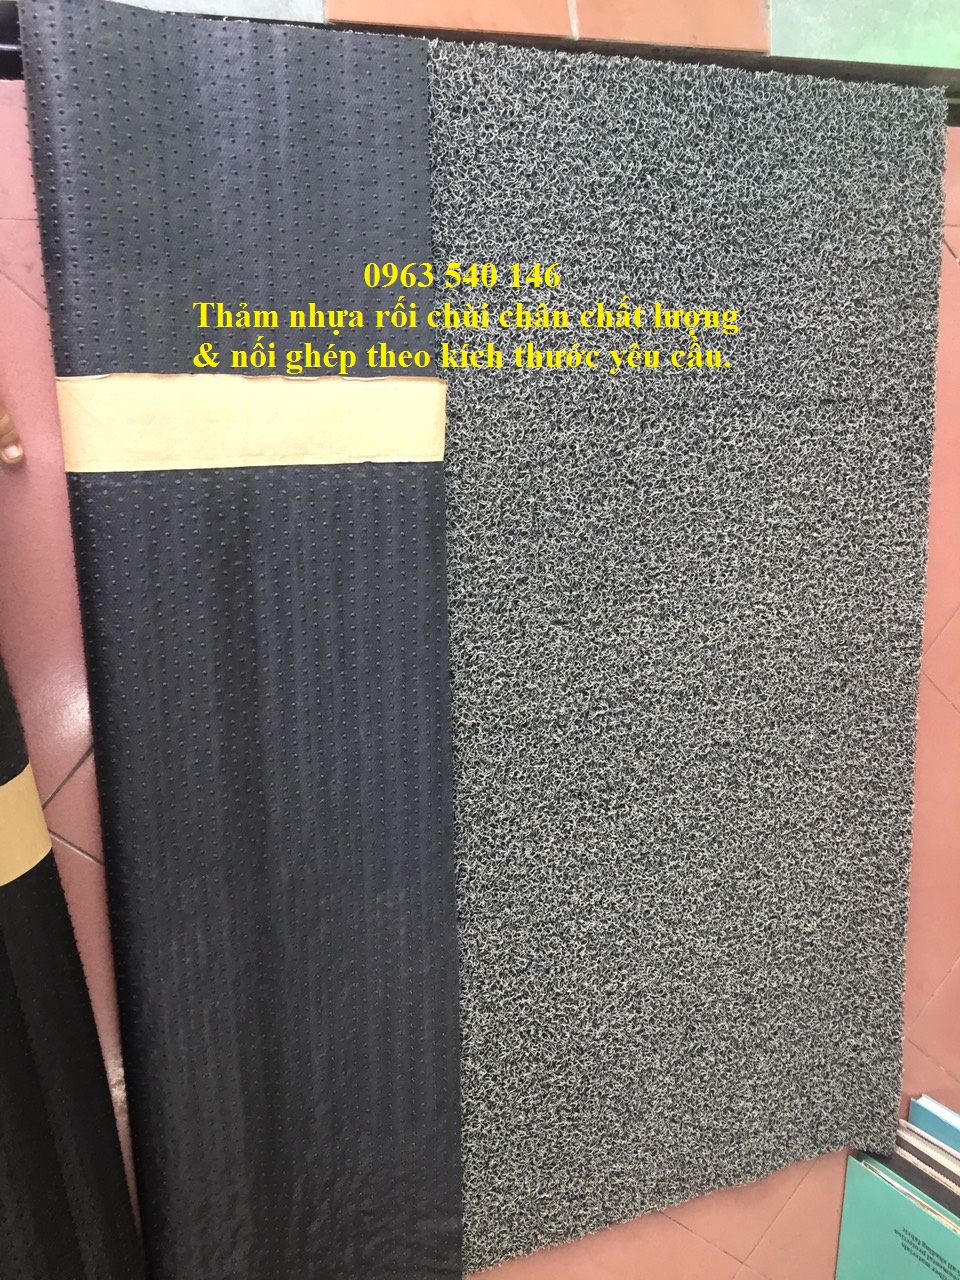 Nếu thang máy của quý khách lớn chúng tôi sẽ can thêm thảm để phù hợp với kích thước yêu cầu. Đảm bổ độ thảm mỹ tuyệt đối cho quý khách.